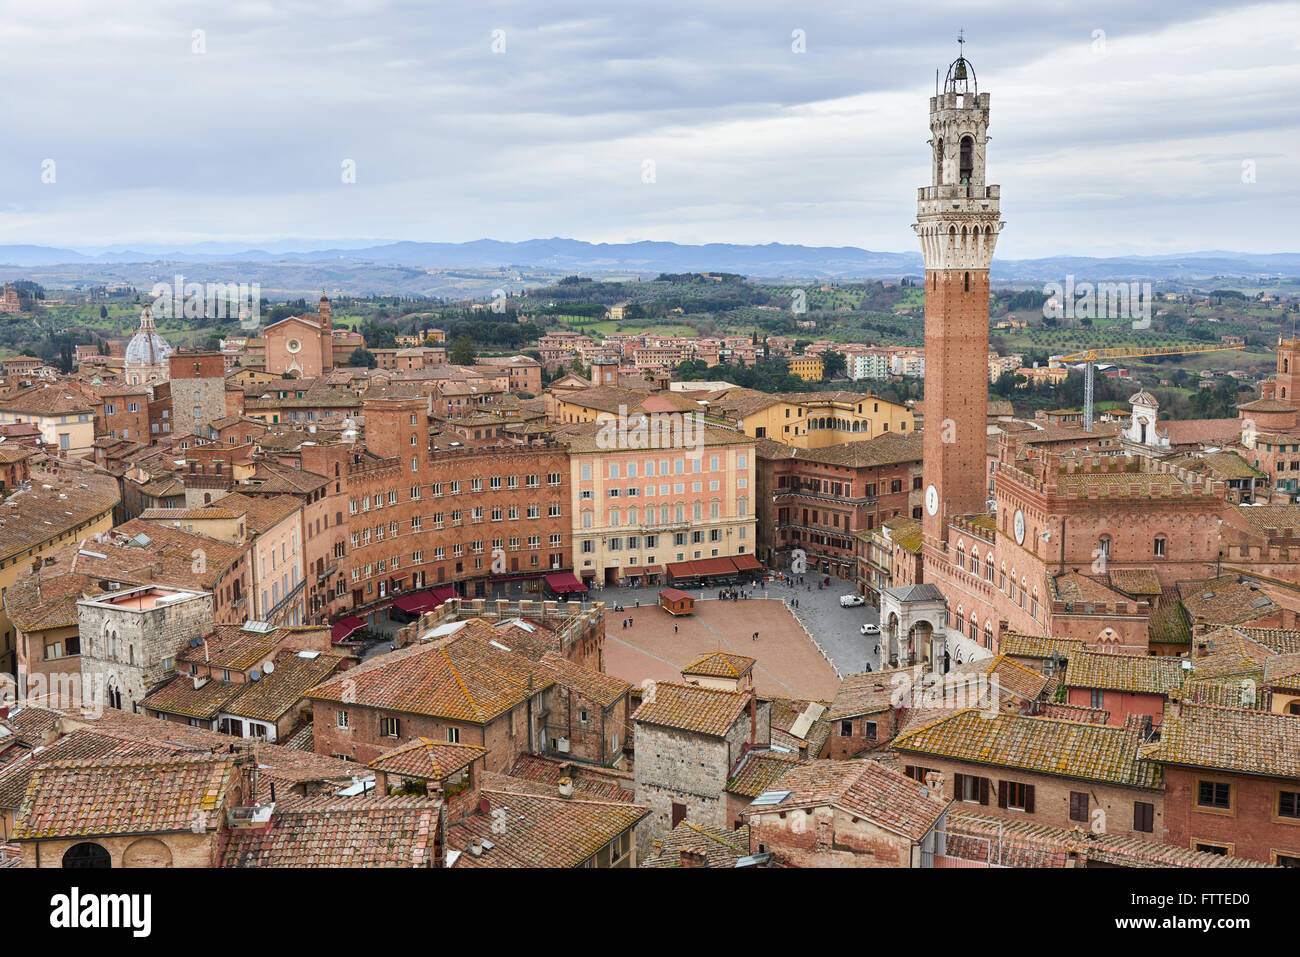 Torre del Mangia y Piazza del Campo.La torre fue uno de la torre más alta de la Italia medieval, ubicado en la Piazza del Campo Foto de stock